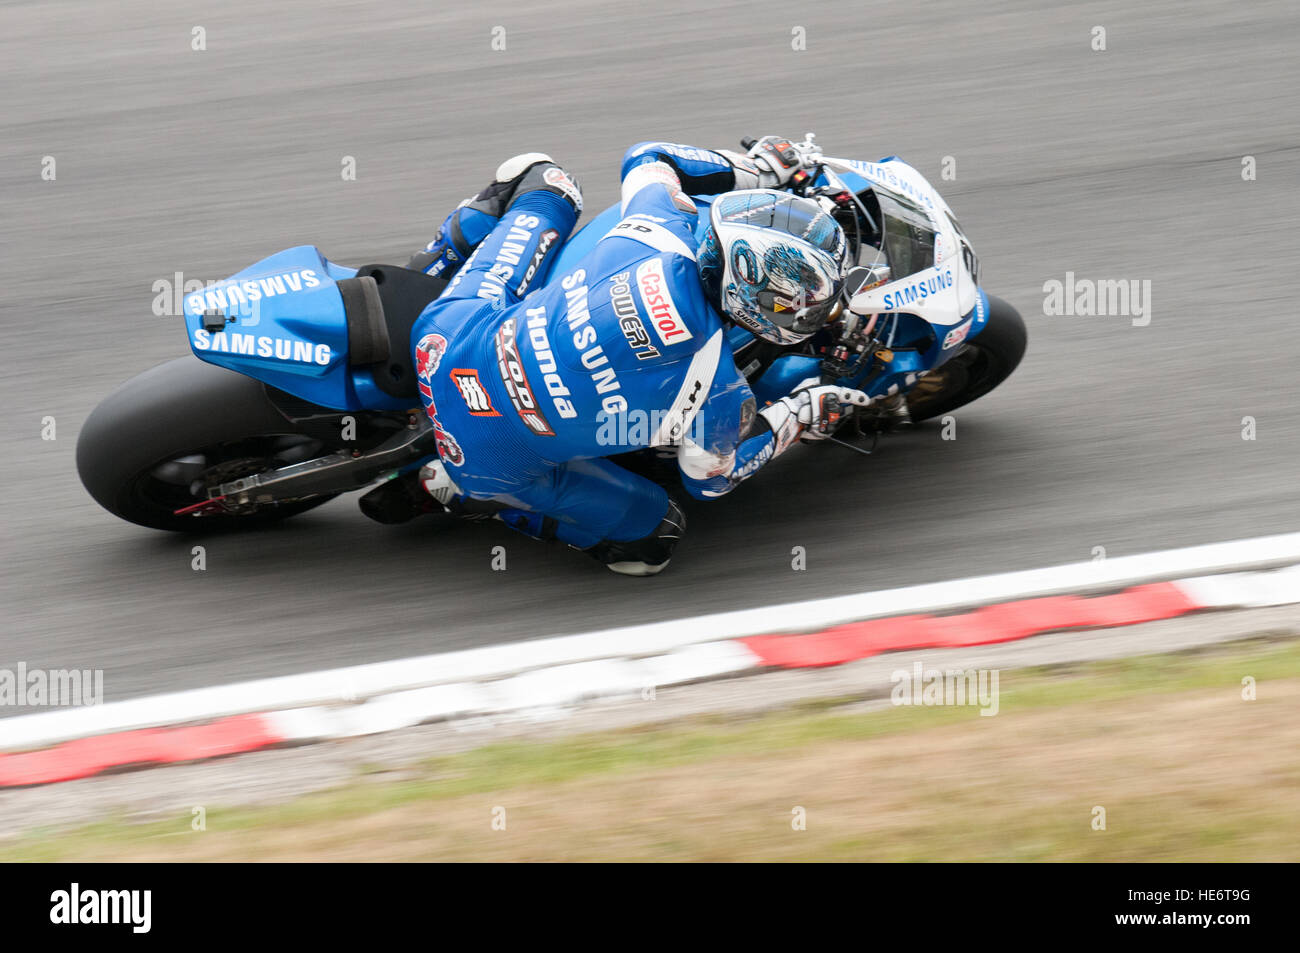 motorcycle racing Stock Photo